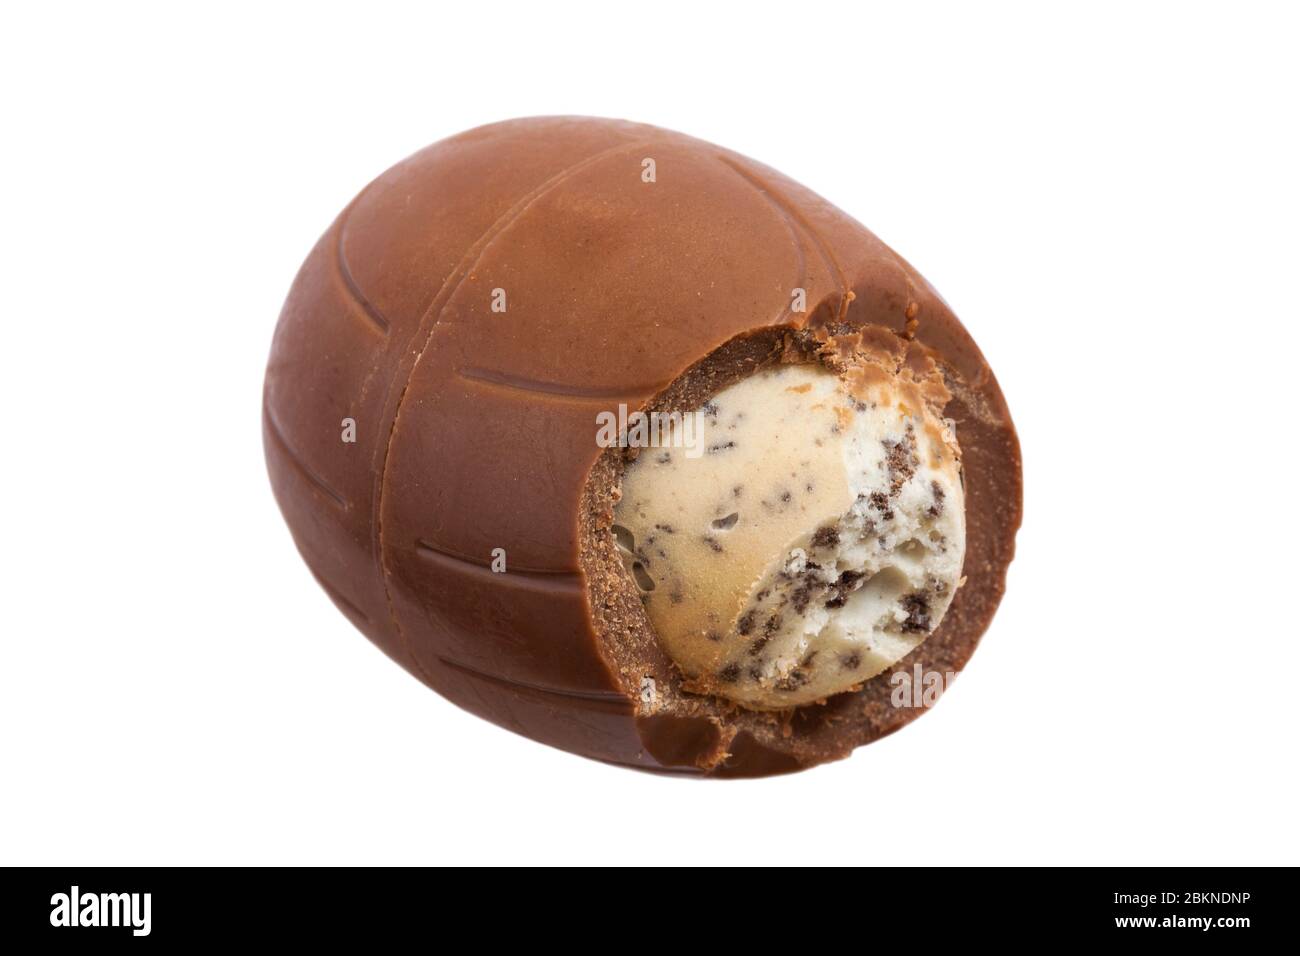 Oreo Easter Egg srotolato e iniziato a mostrare contenuti isolati su sfondo bianco - uovo di cioccolato al latte con una crema di latte e pezzi di biscotto Foto Stock